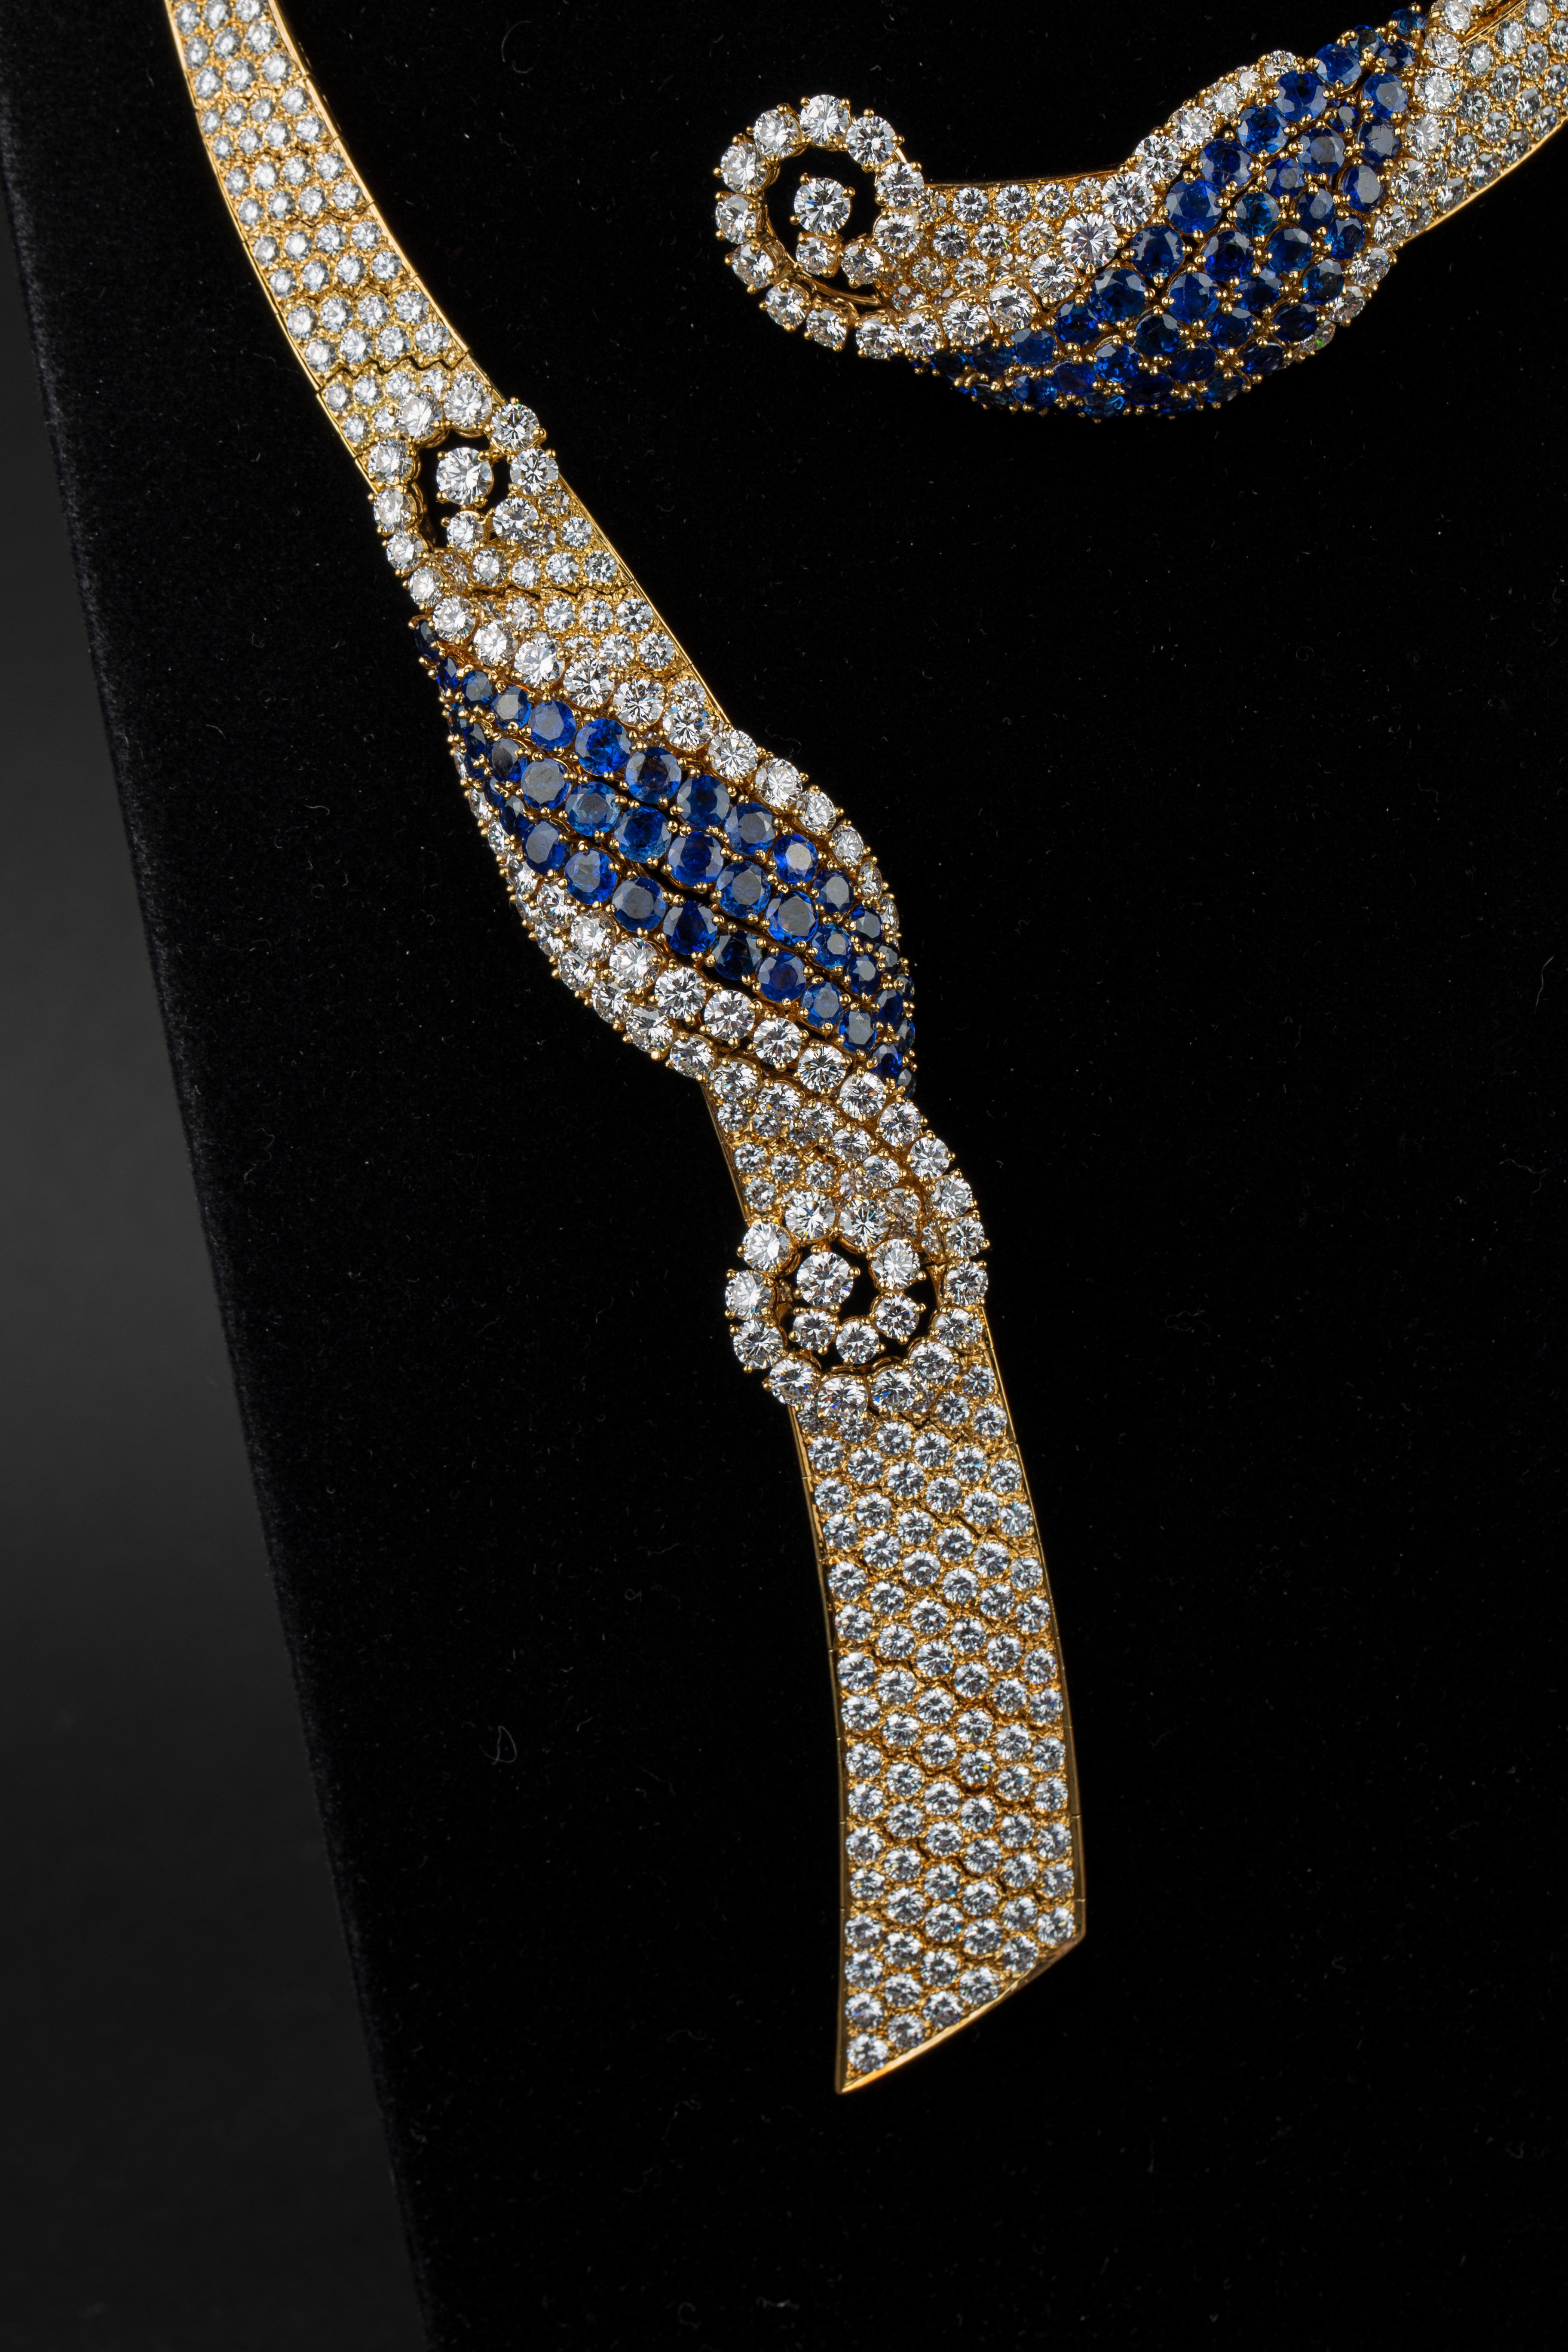 A&M Collier et boucles d'oreilles en or jaune 18 carats sertis de diamants et de saphirs. Fabriqué à Paris par le célèbre joaillier André Vassort dans les années 1970.

Un bracelet assorti est également disponible. 

102 carats de diamants de